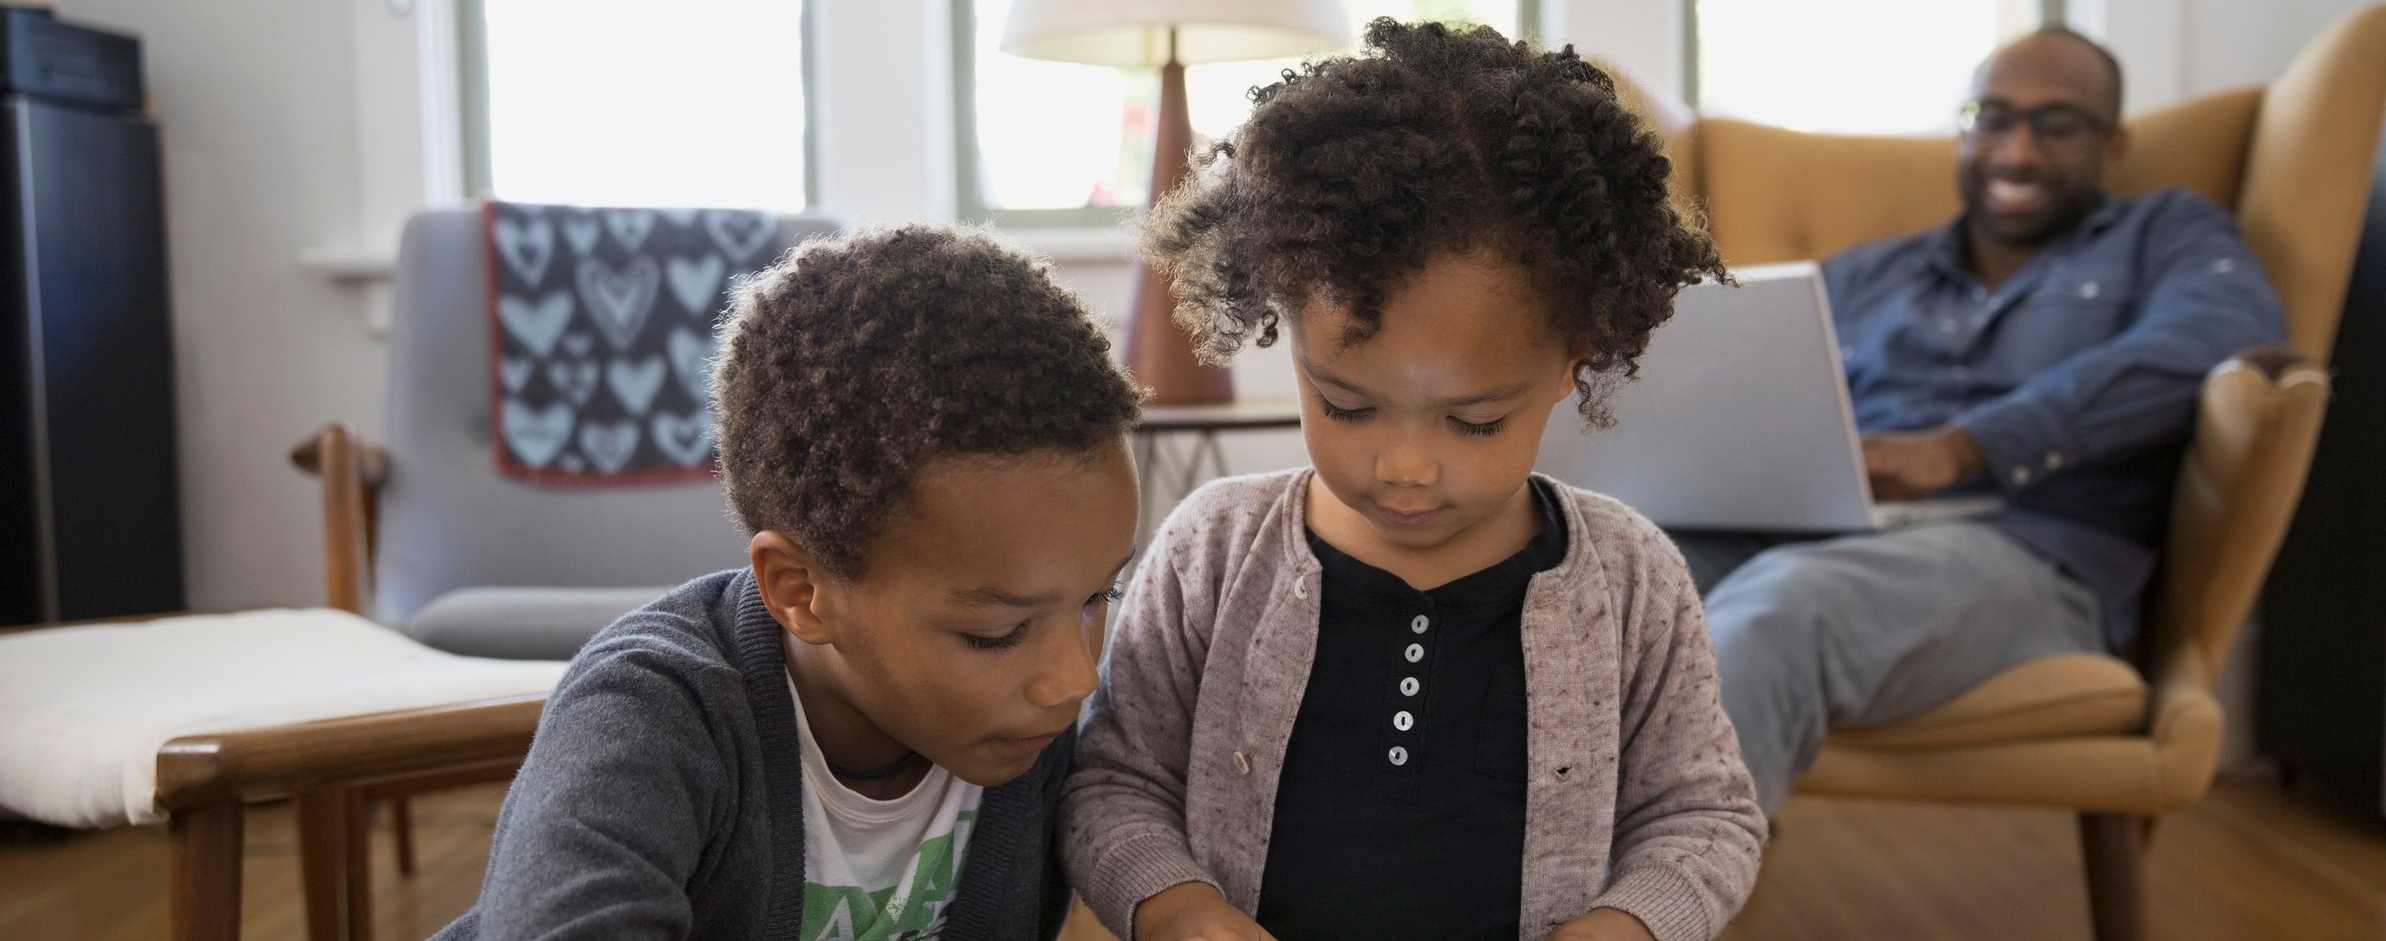 Enfants partageant un moment ensemble sur une tablette numérique